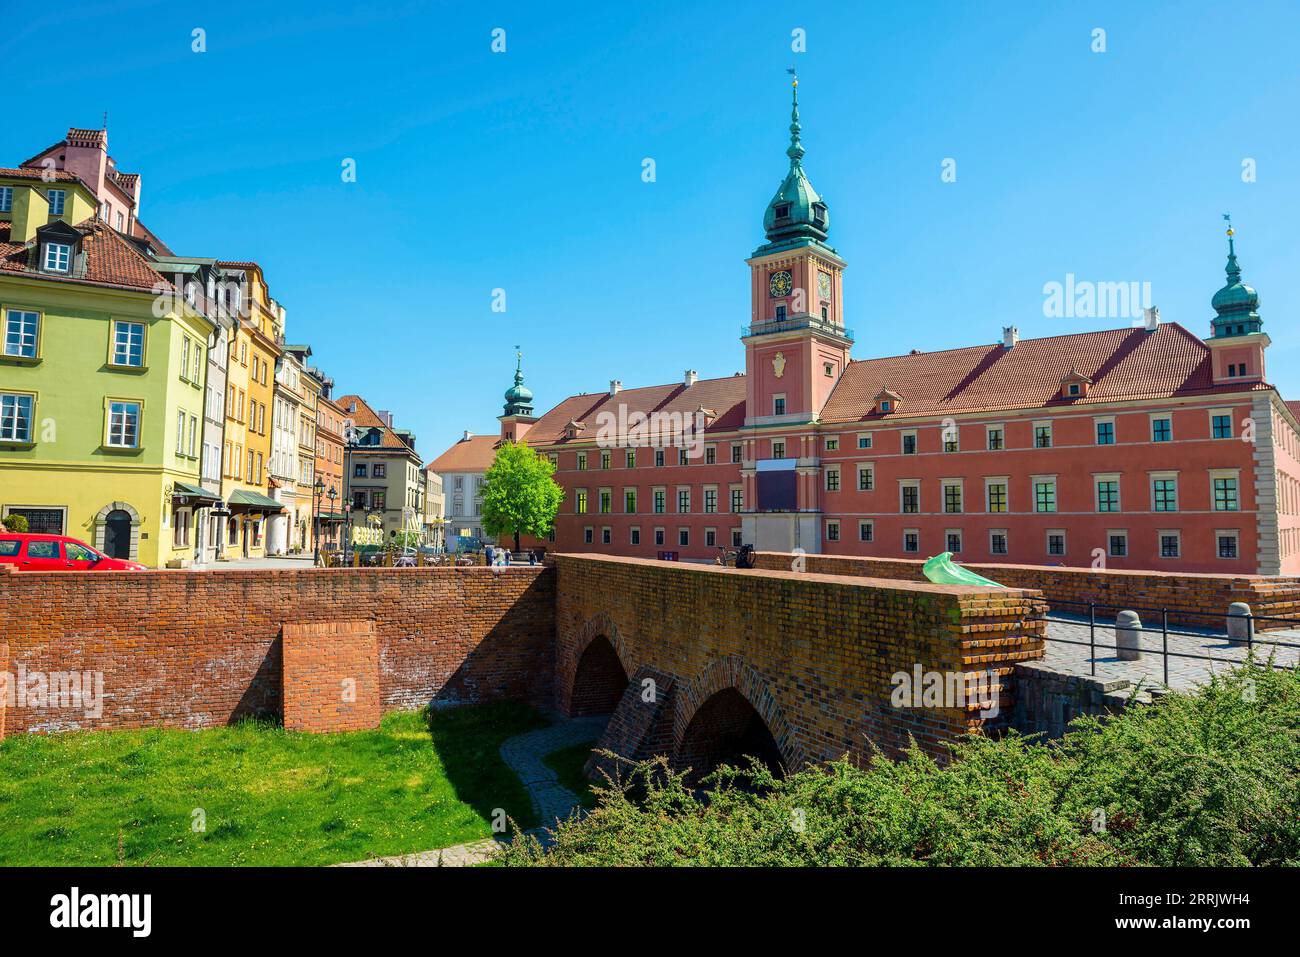 Il Castello reale di Varsavia è una residenza del castello che in passato servì per secoli come residenza ufficiale dei monarchi polacchi. Foto Stock